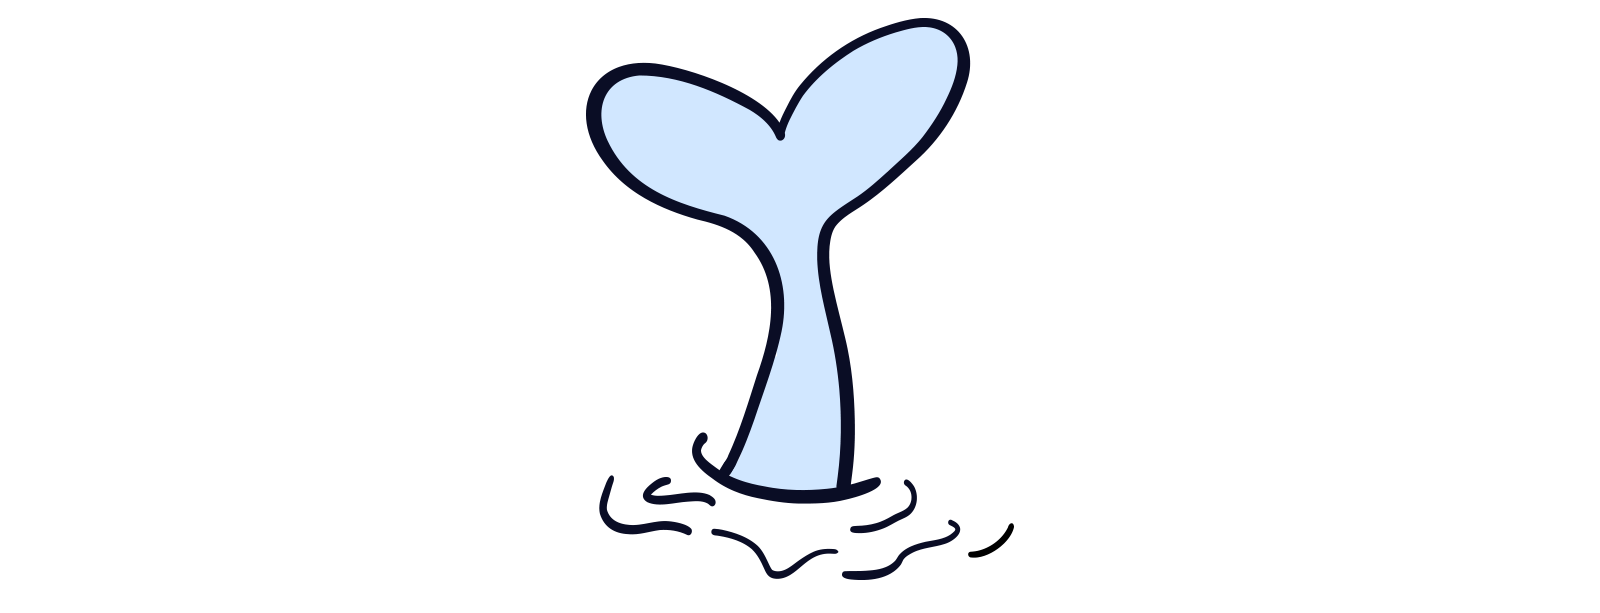 Illustrasjon av halen til en hval som stikker opp av vannet